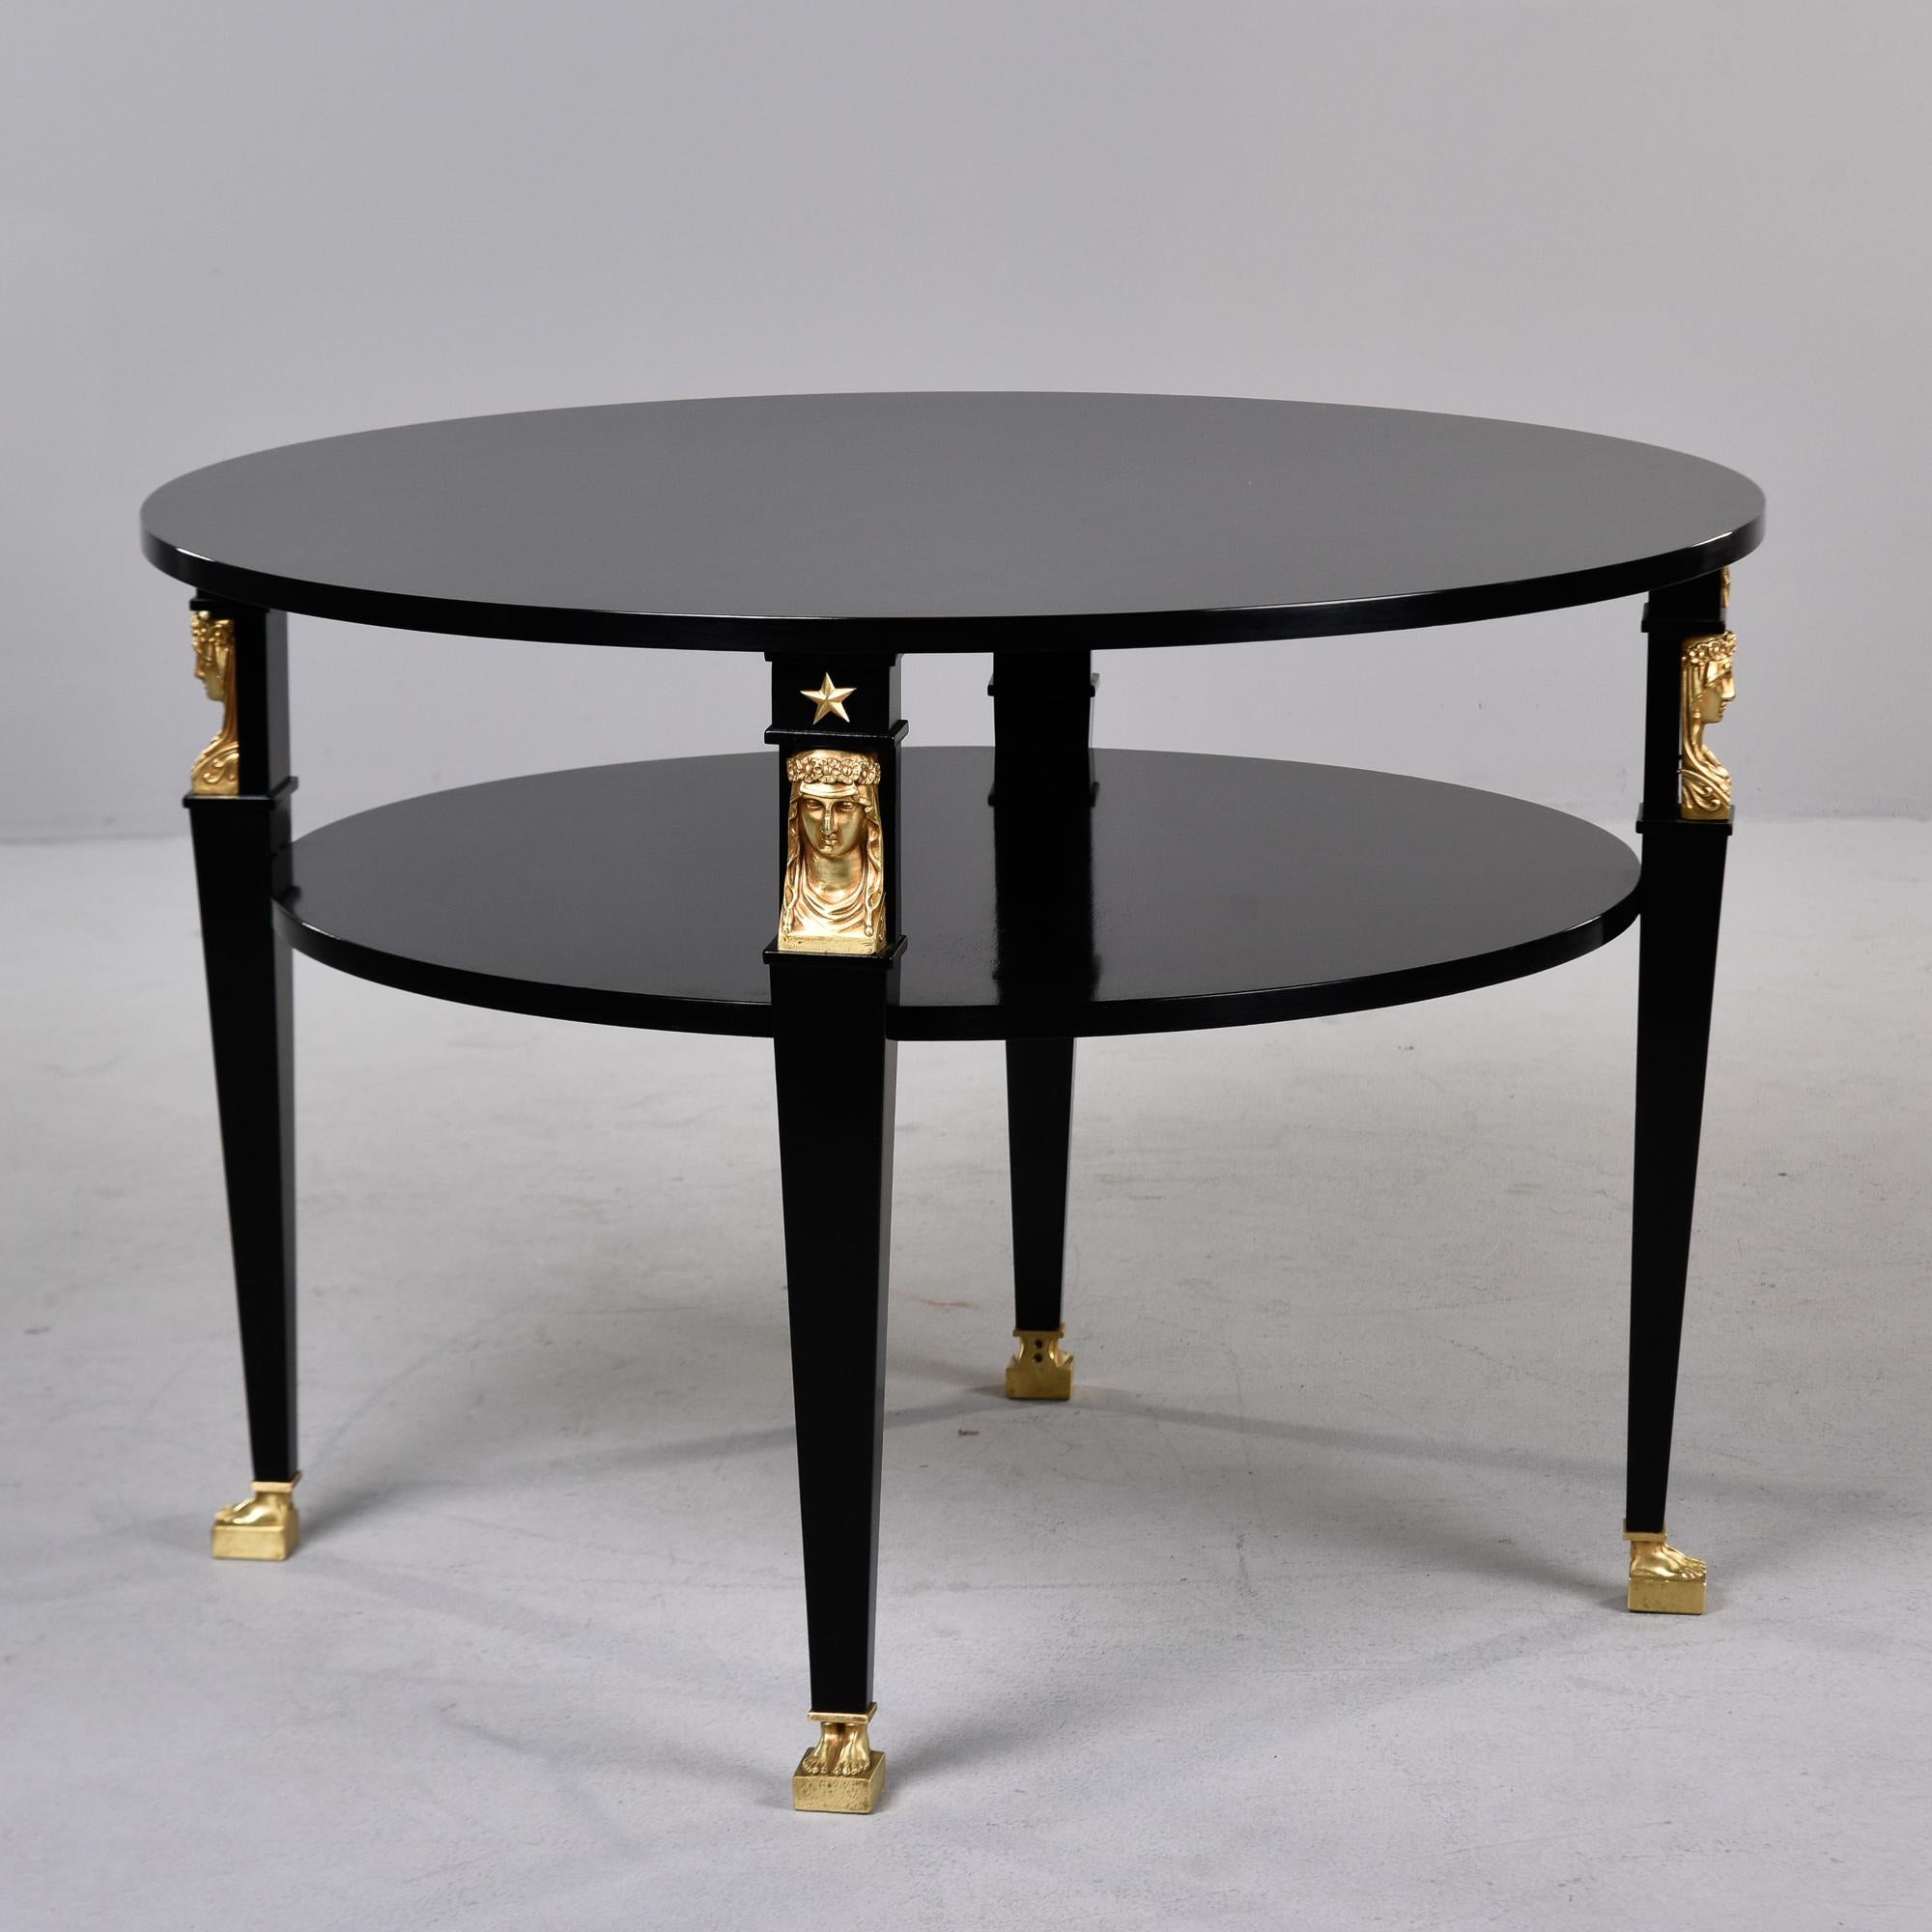 Trouvée en France, cette table ronde à deux niveaux présente de forts éléments de style empire / néoclassique. La table a été professionnellement ébénisée en Angleterre et la finition dorée des figurines en bronze a également été restaurée. Chacun